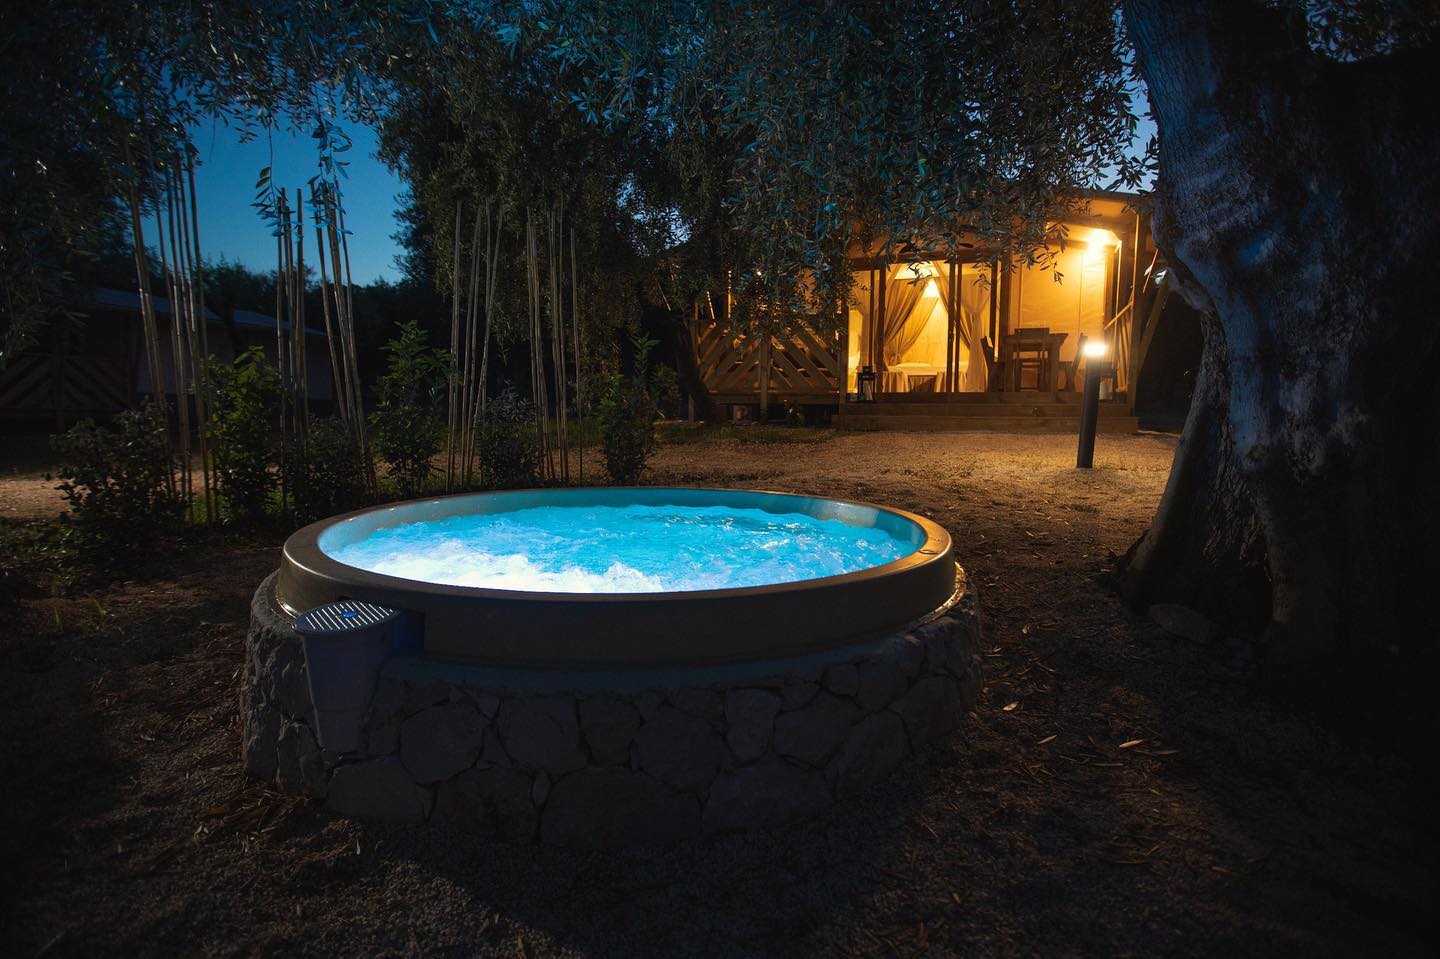 Самые красивые места для глэмпинга в Апулии, где можно отдохнуть среди оливковых деревьев (и поспать под звездами)